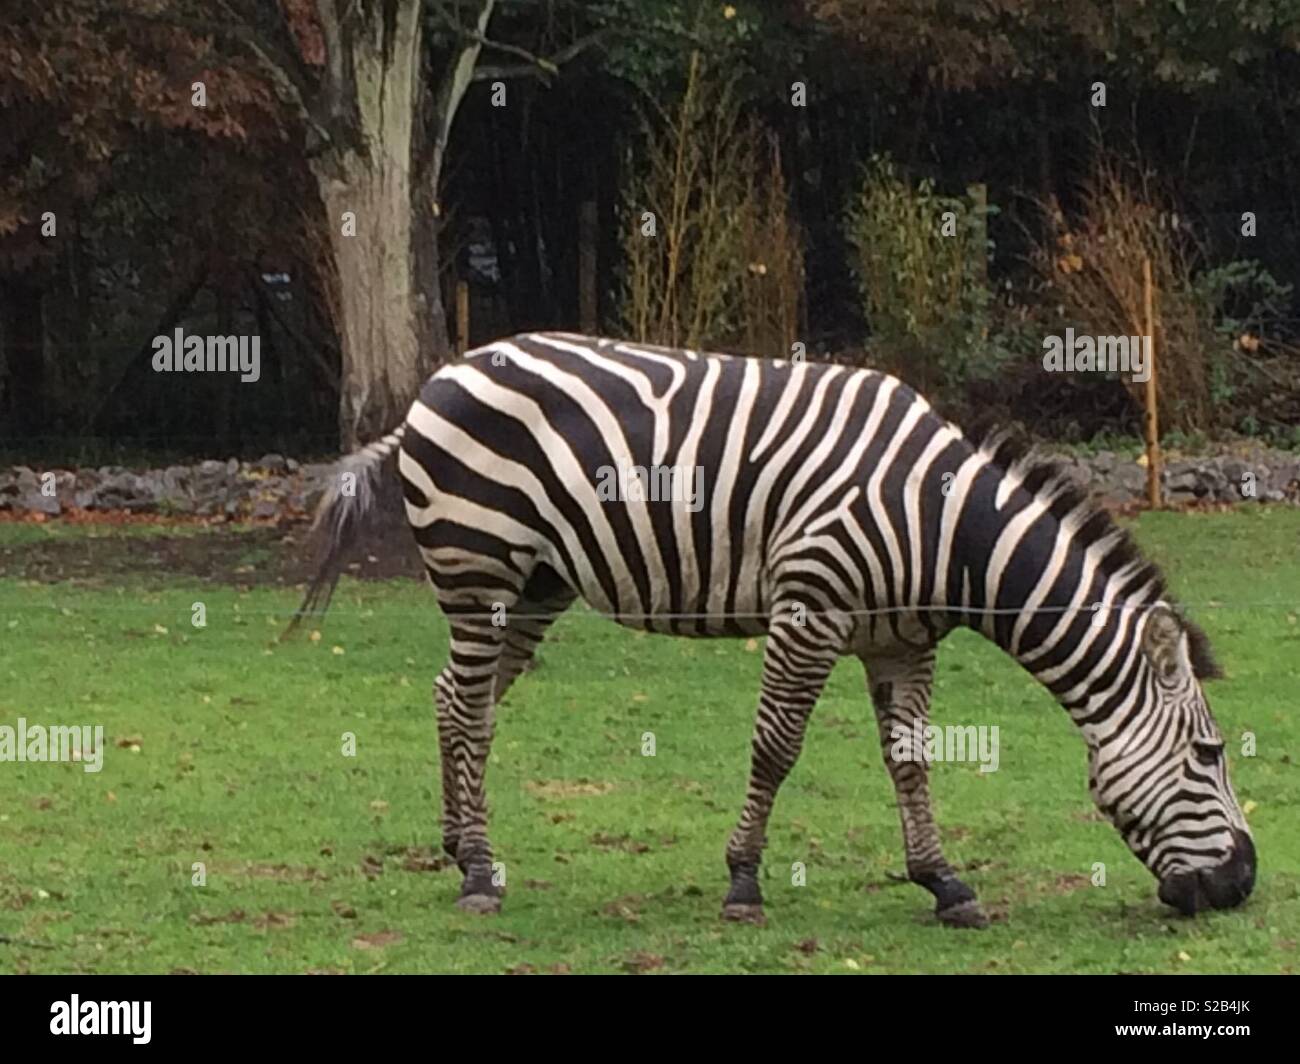 Zebra grazing Stock Photo